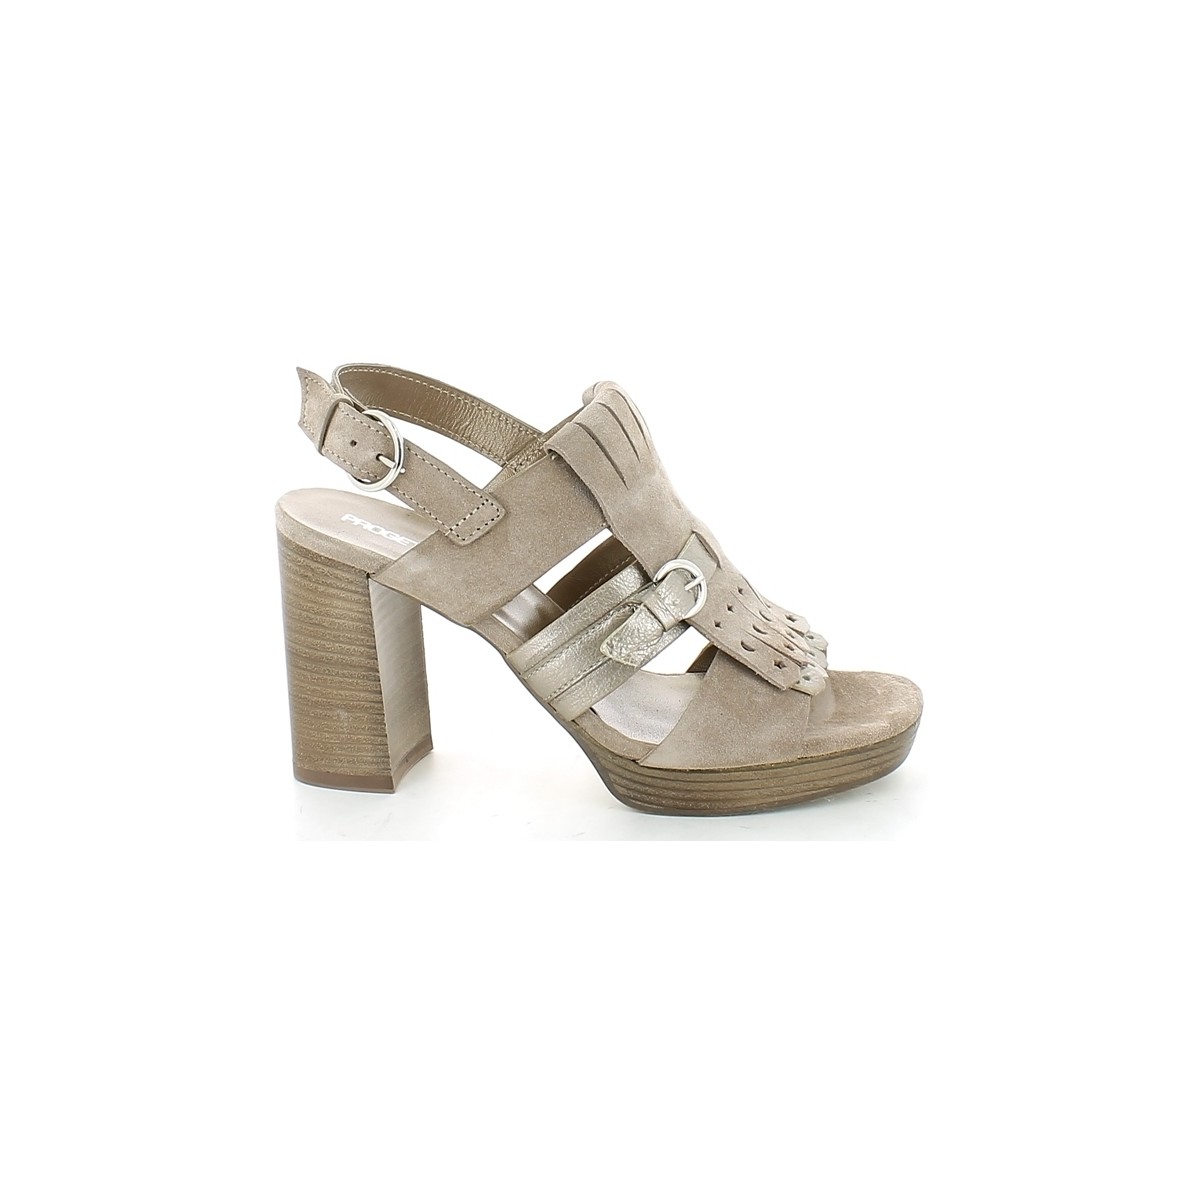 Chaussures Femme Sandales et Nu-pieds Progetto D.S197.02 Marron